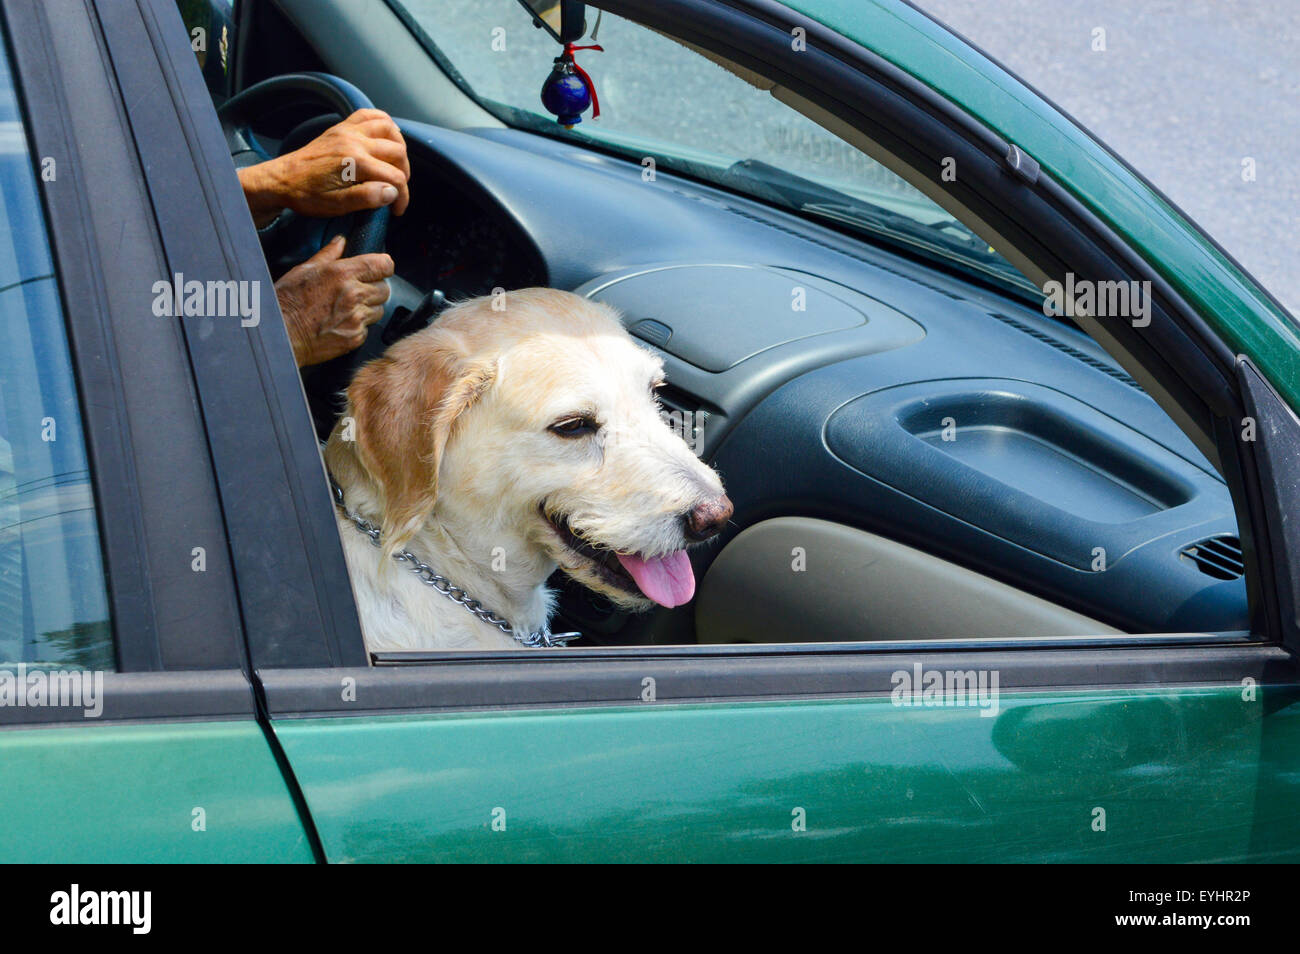 Cute golden retriever dog équitation dans une voiture alors qu'il était assis comme des avec sa langue à la recherche d'une fenêtre Banque D'Images